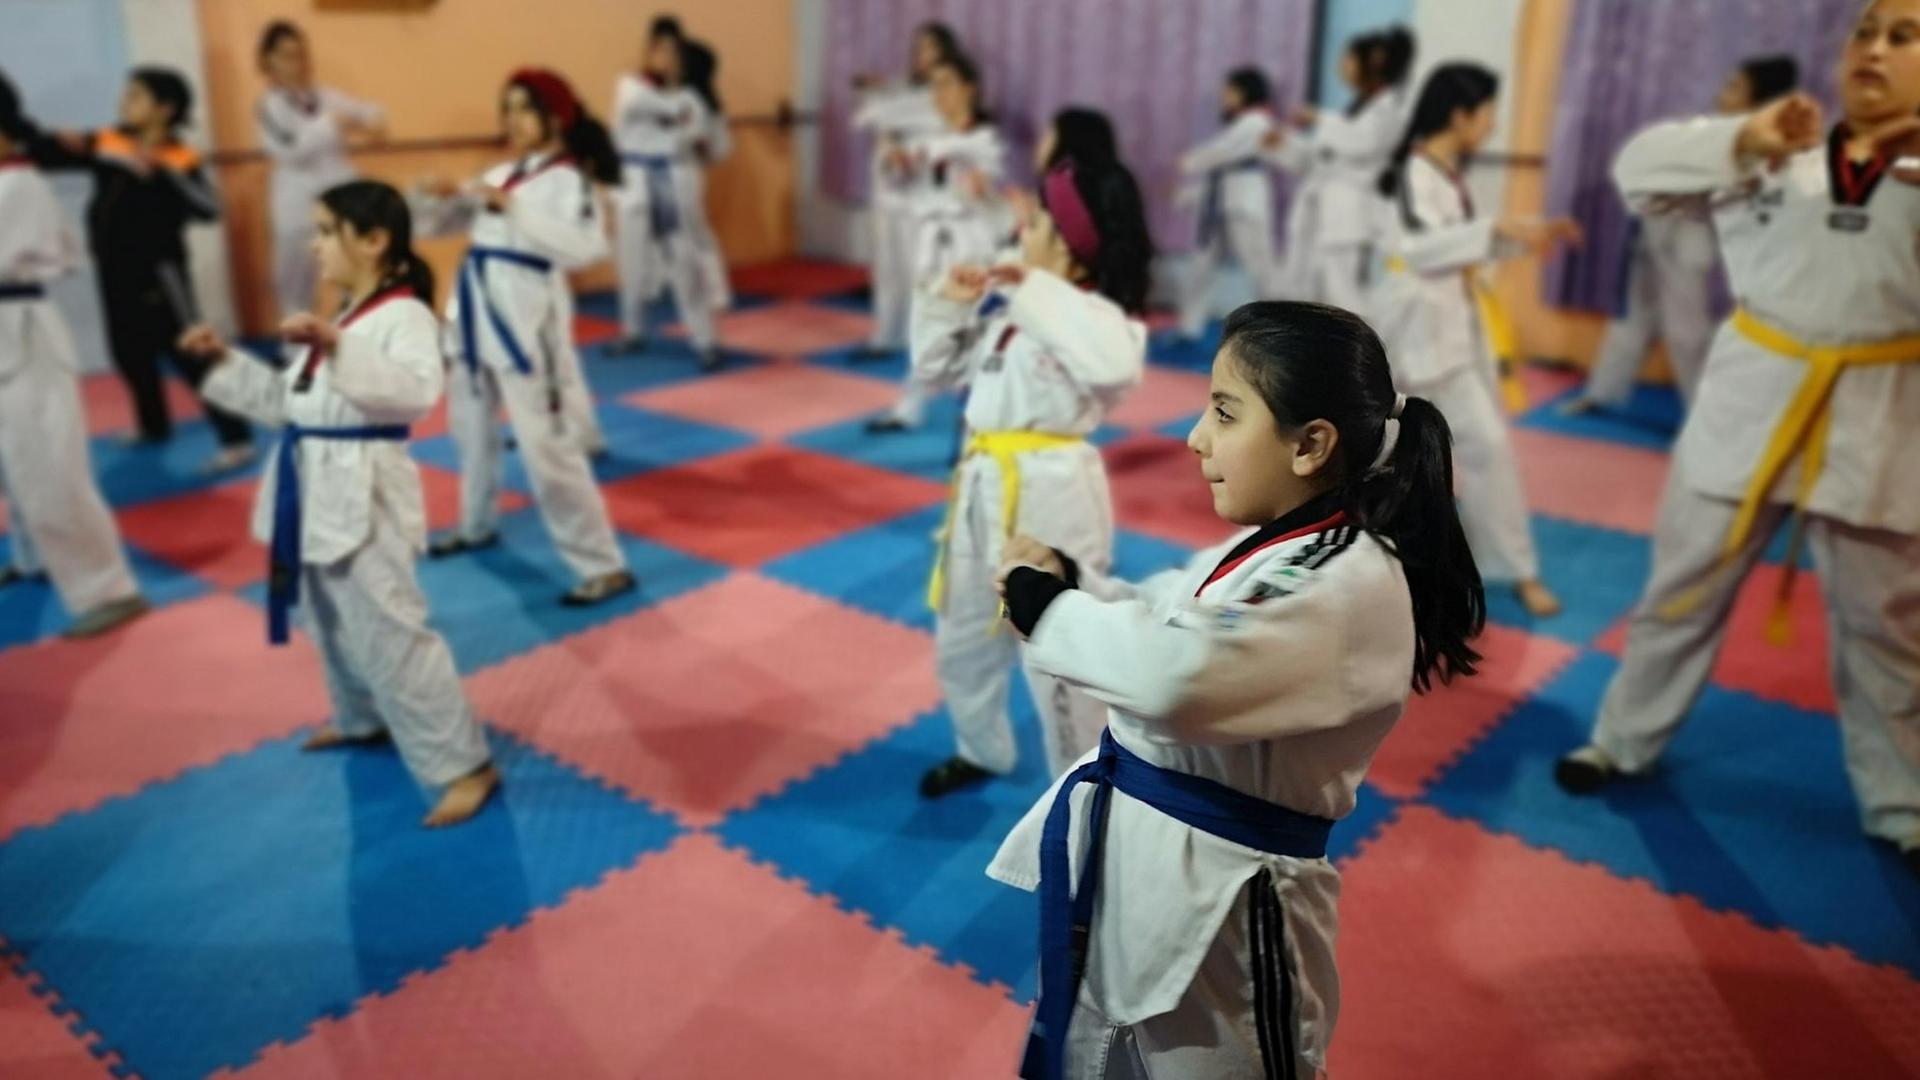 Teakwondo-Kurs mit Mädchen, die trainieren